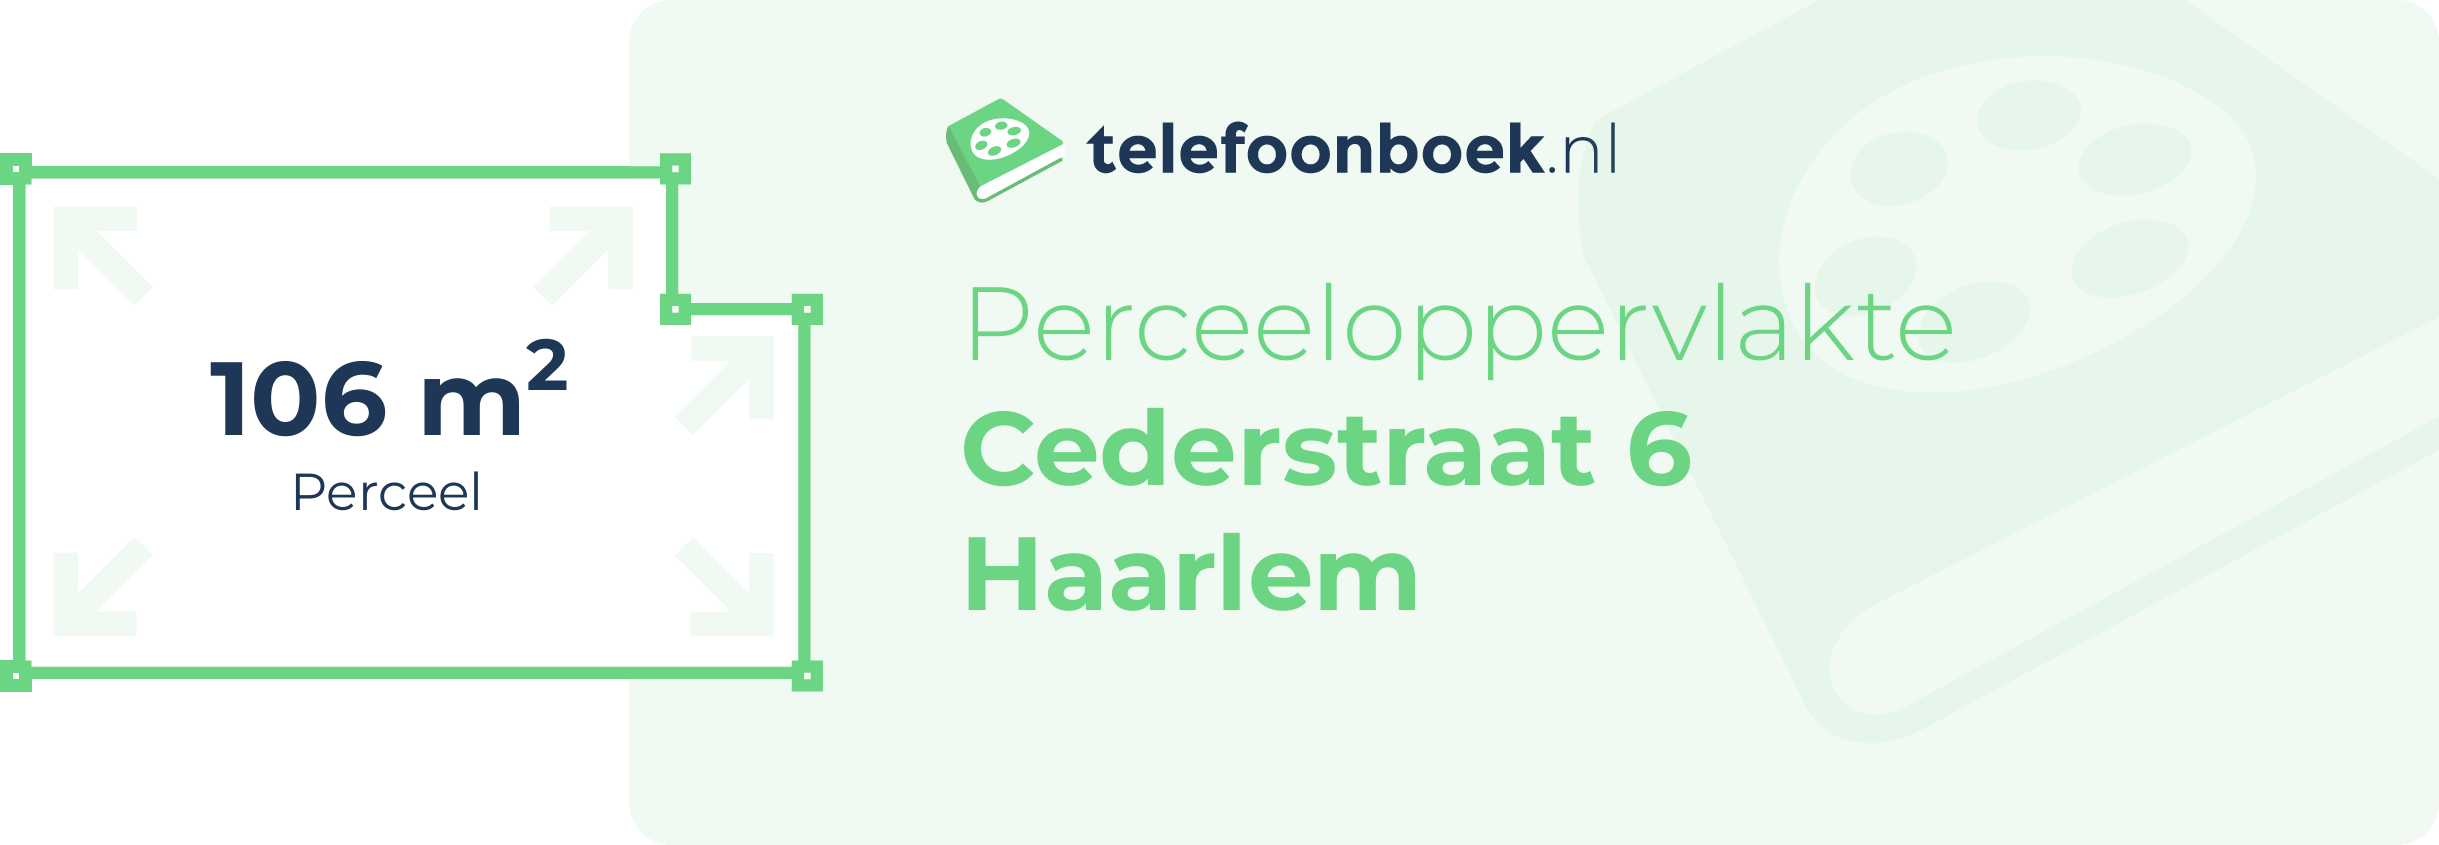 Perceeloppervlakte Cederstraat 6 Haarlem